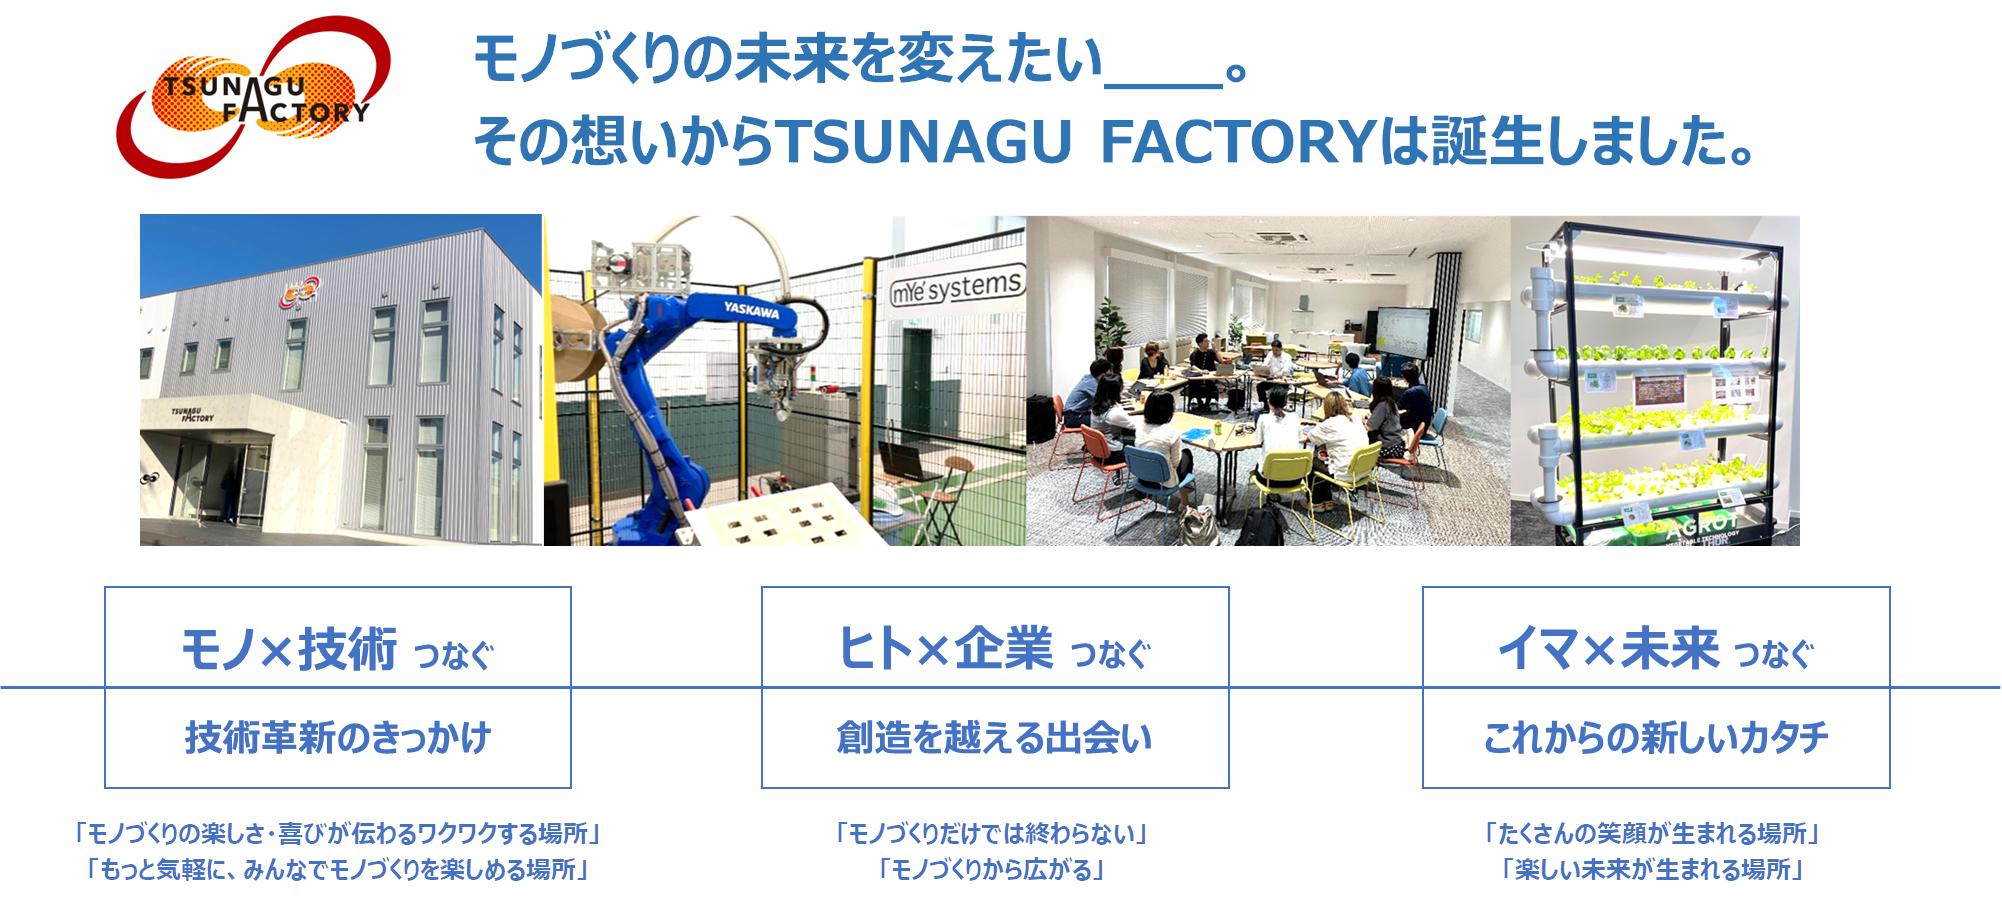 TSUNAGU FACTORY外観・施設内画像